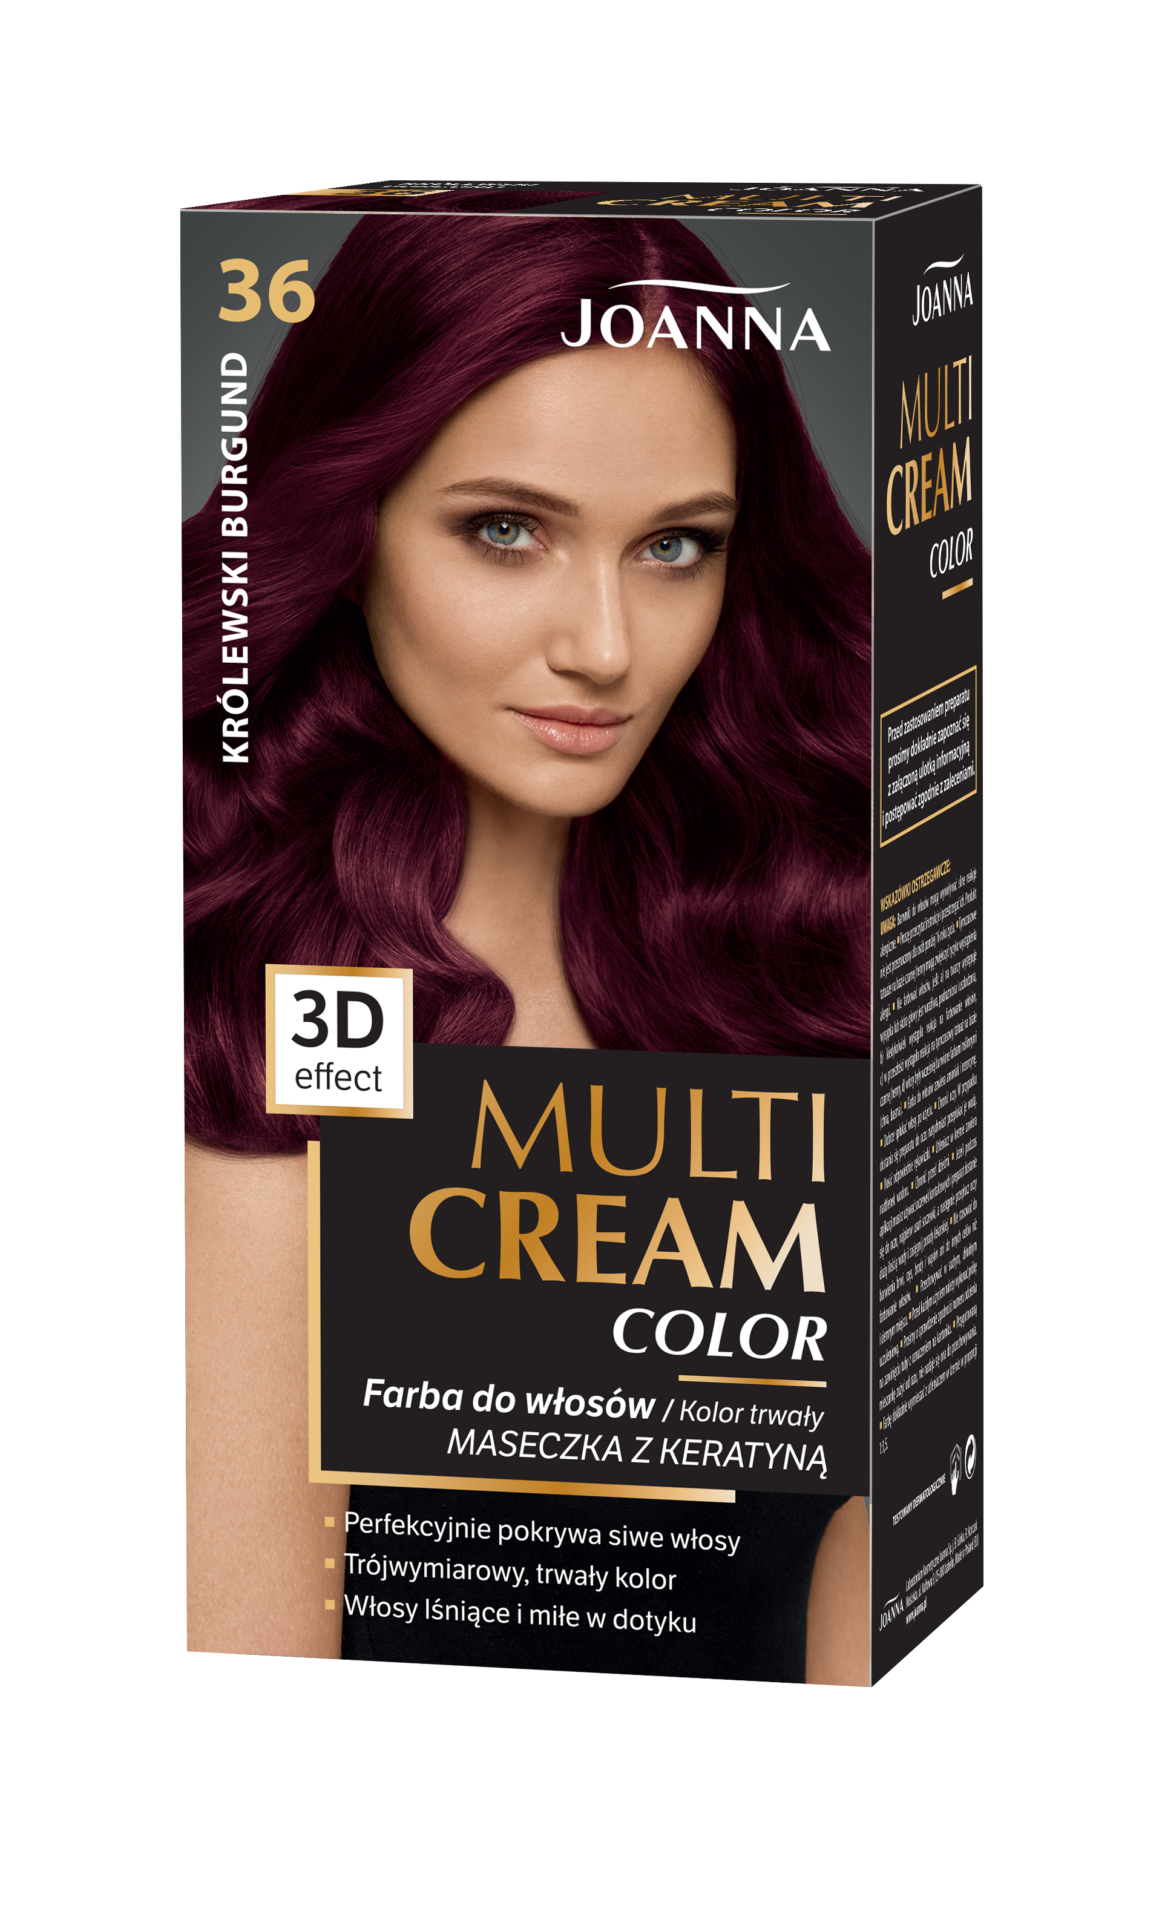 Trwała farba do włosów Joanna Multi Cream Color w odcieniu królewski burgund nr 36